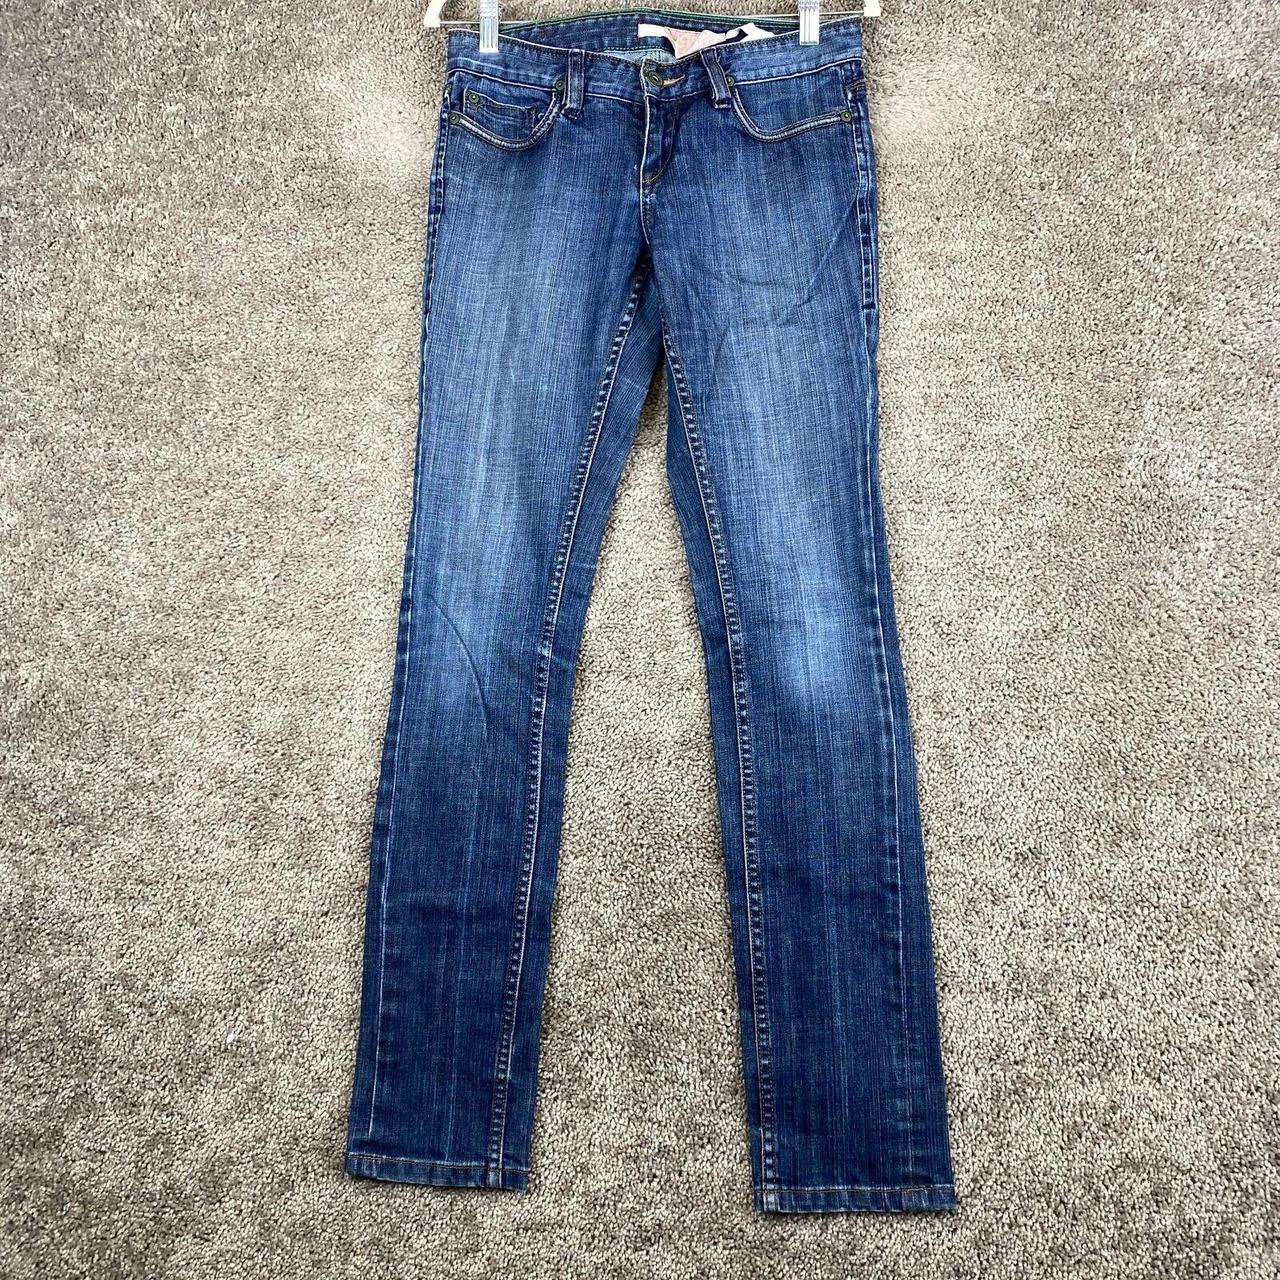 Silence Noise Skinny Denim Jeans Women's Size 30X33... - Depop